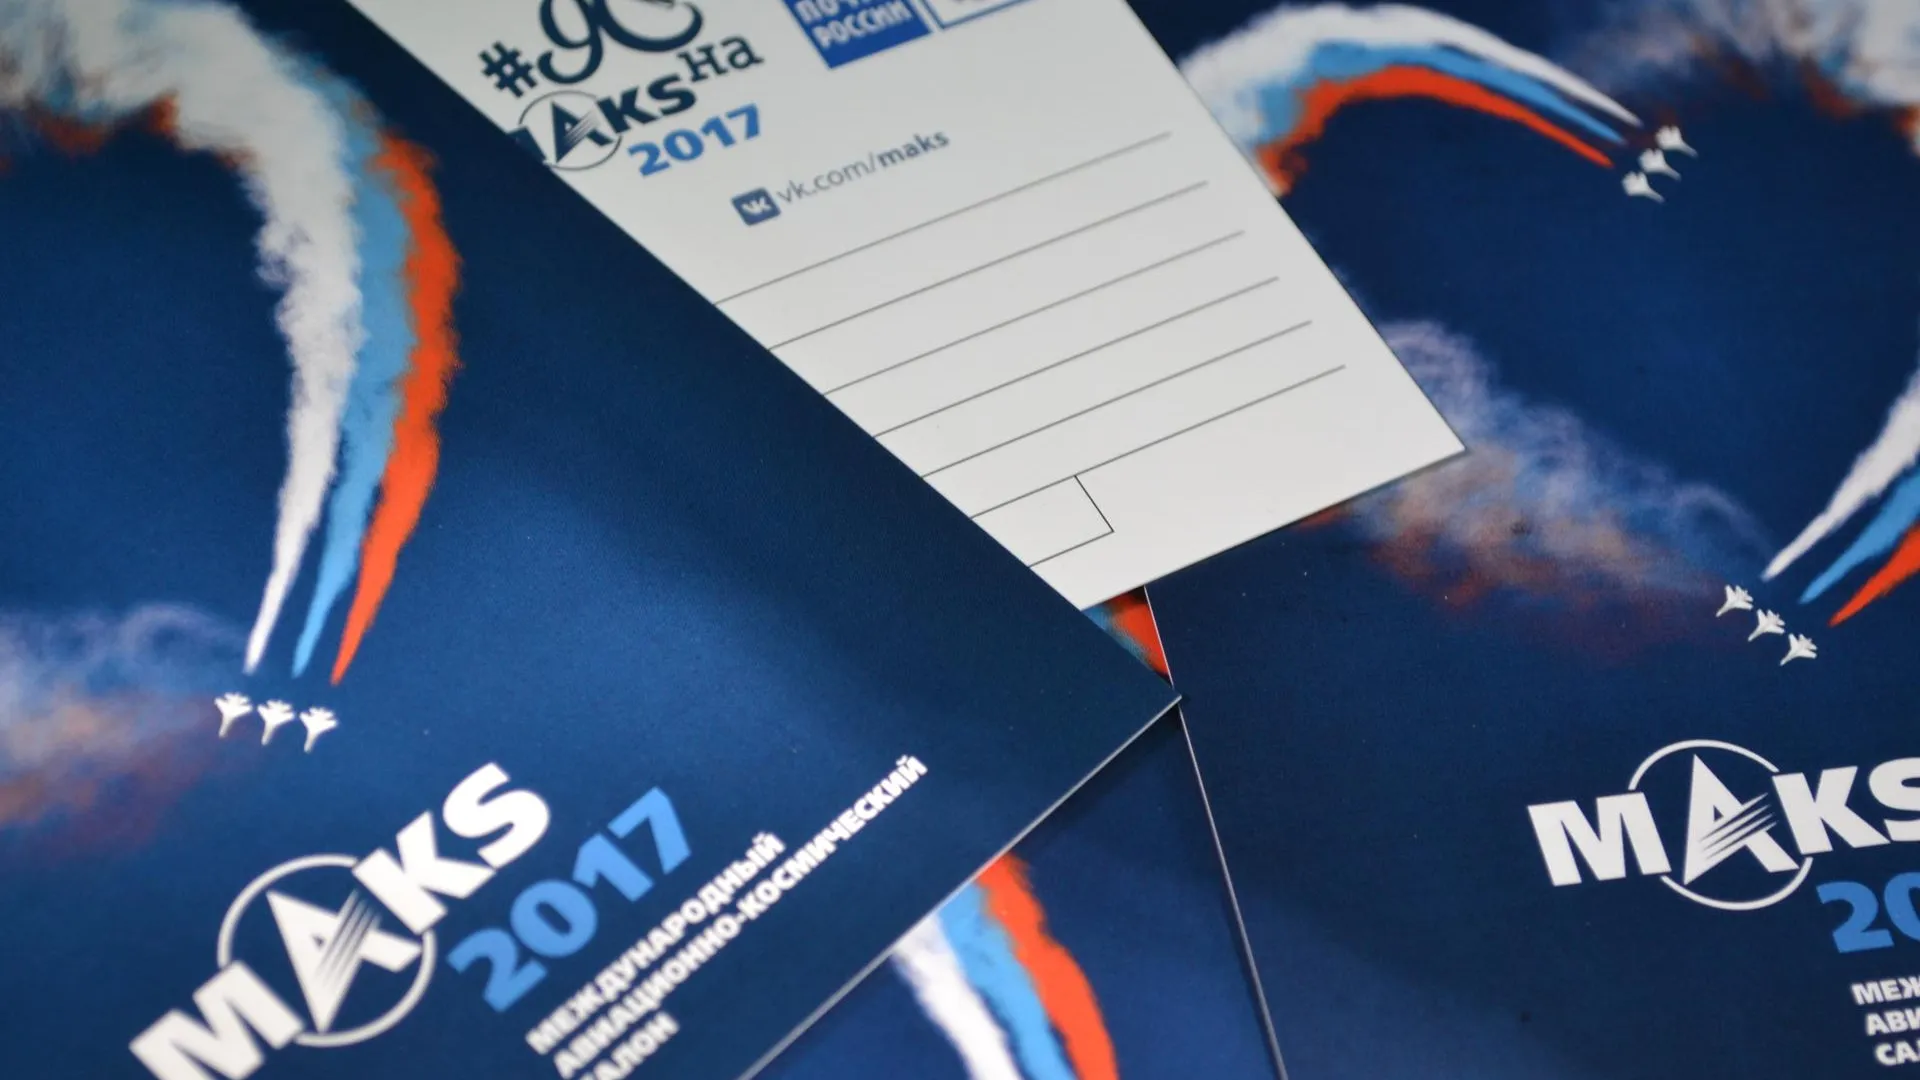 Гости МАКС‑2017 могут получить открытки для автографов пилотажных групп